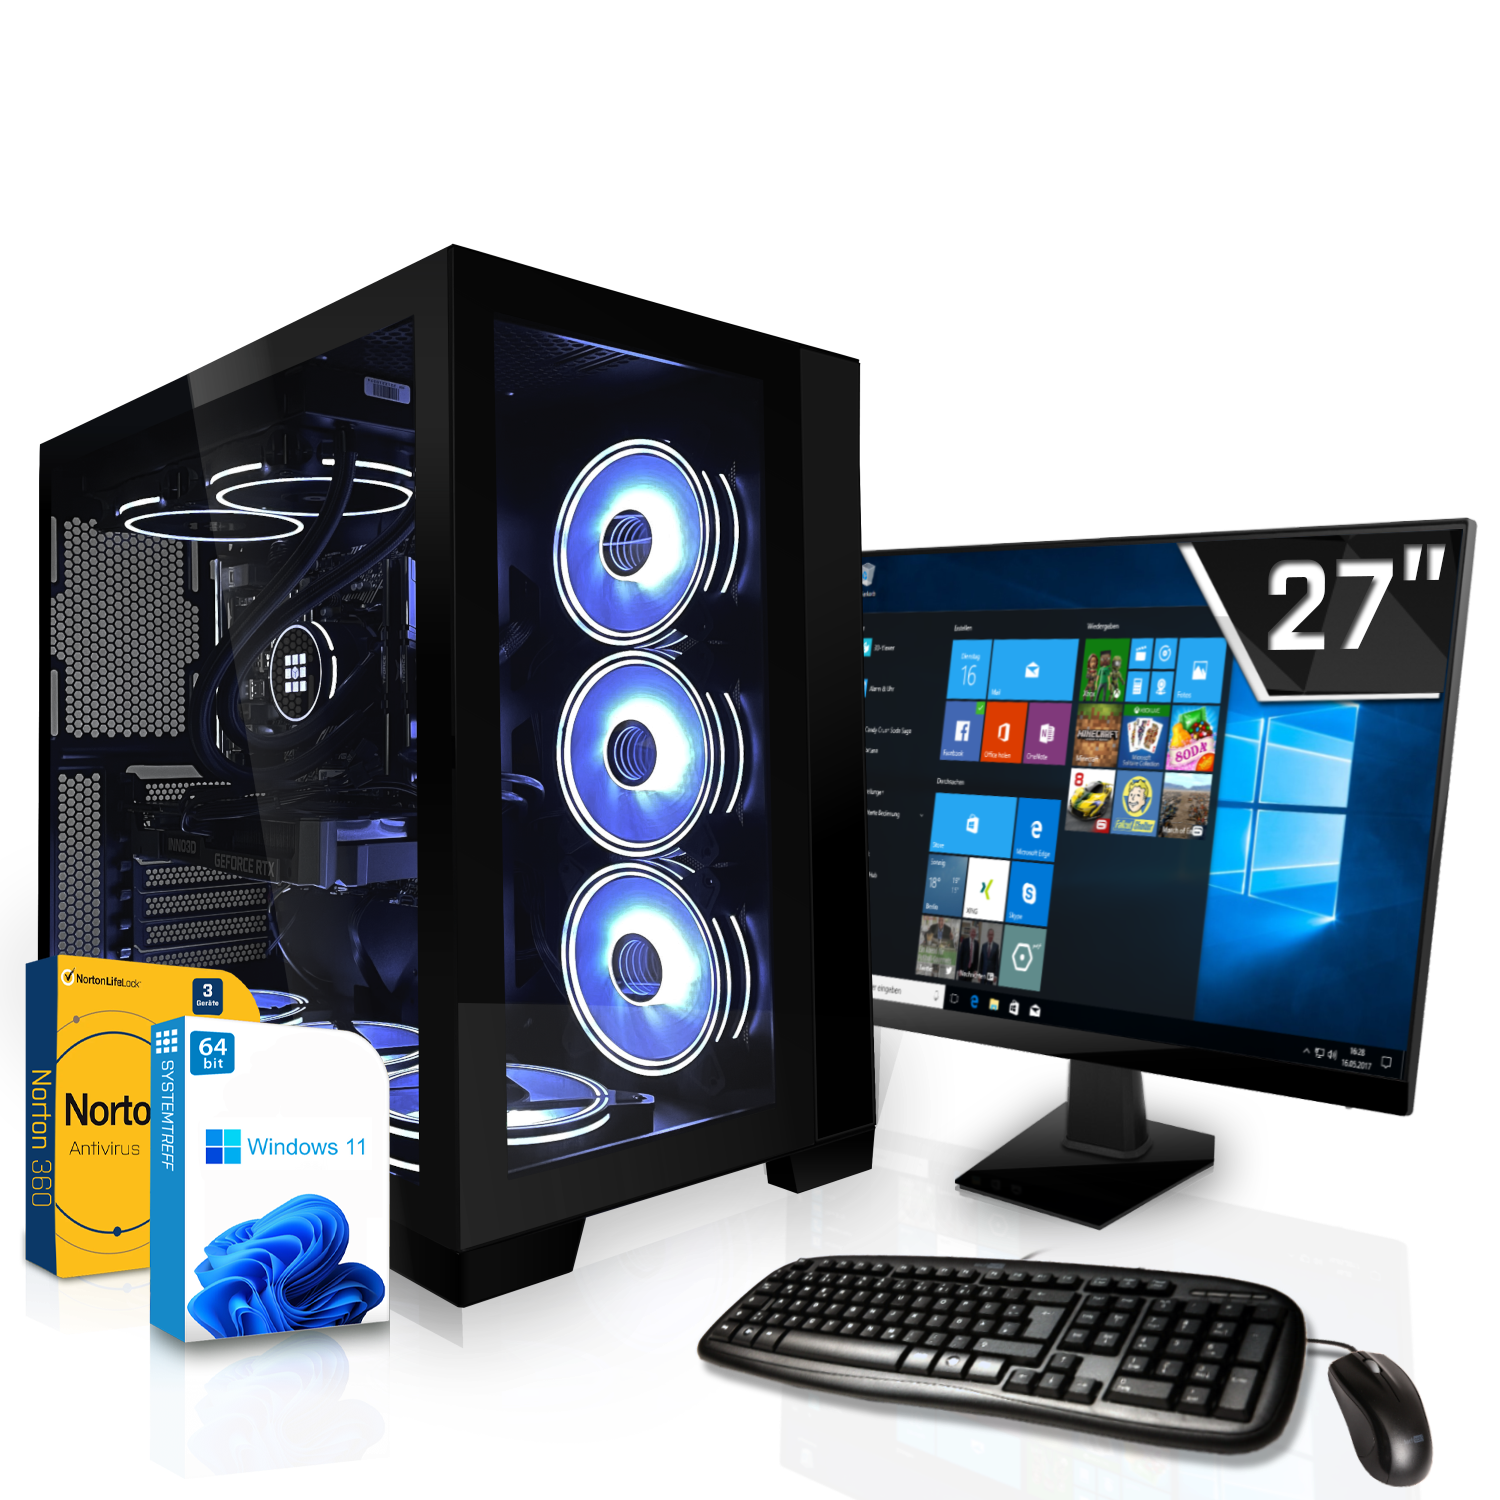 SYSTEMTREFF Gaming Komplett Intel Komplett i9-13900K, Core GB 12GB RTX mSSD, 12 32 GB GDDR6, Nvidia GeForce mit Prozessor, 4070 PC RAM, i9-13900K 1000 GB